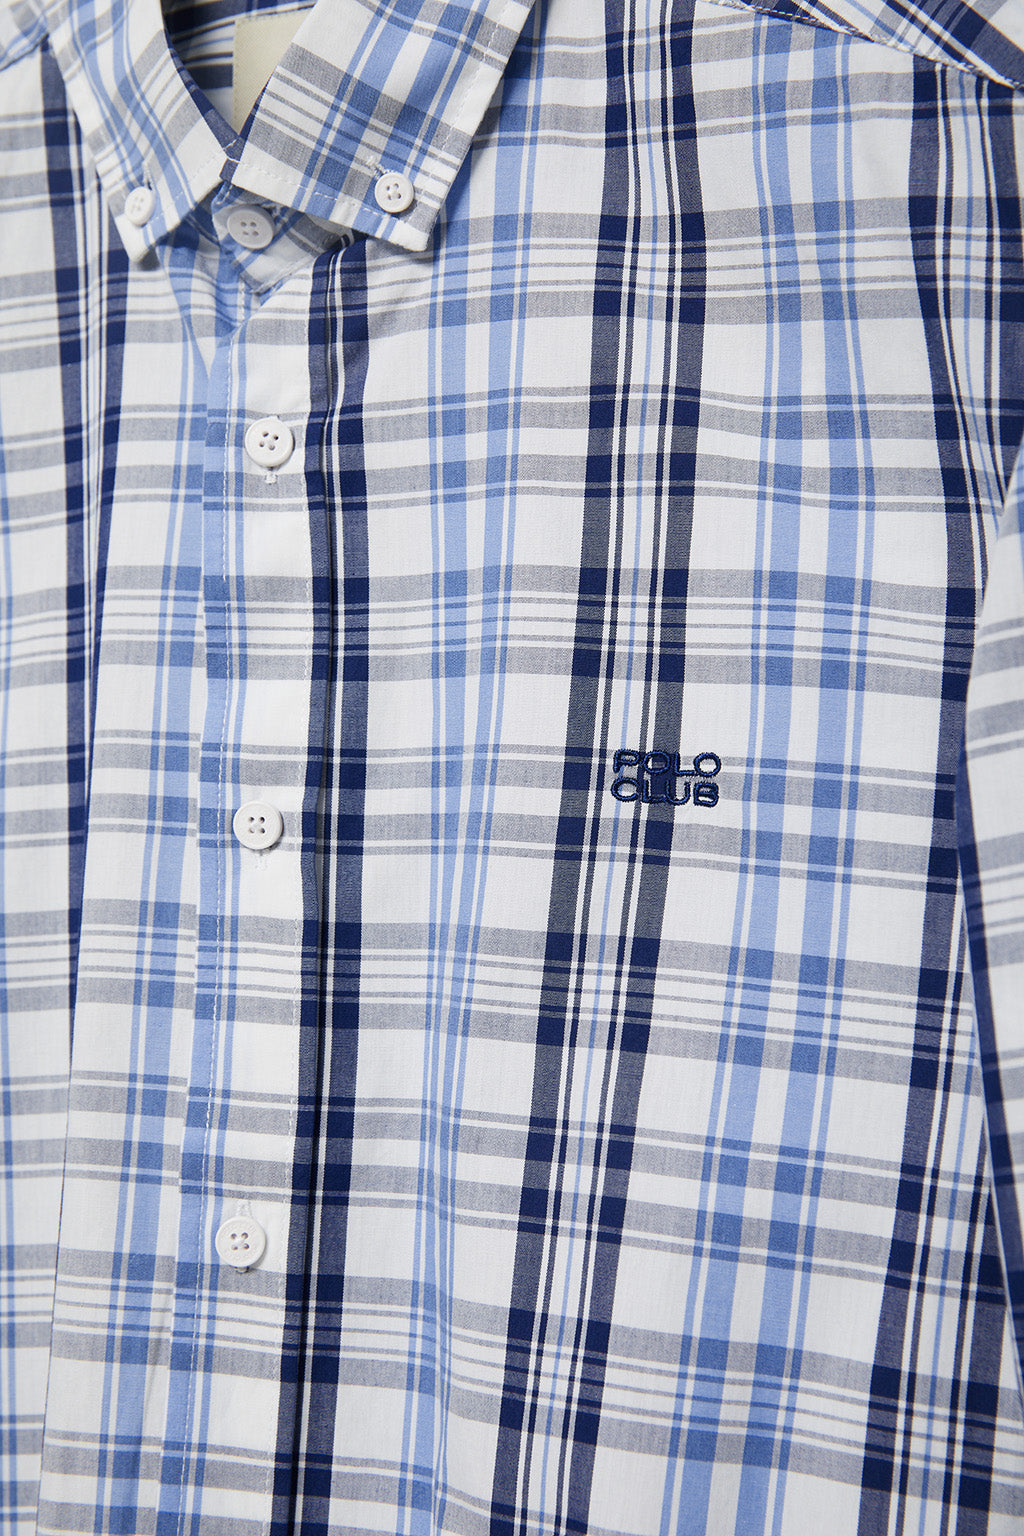 infinito Milagroso hacer clic Camisa de cuadros en tonos azules y blanco con logo bordado – Polo Club